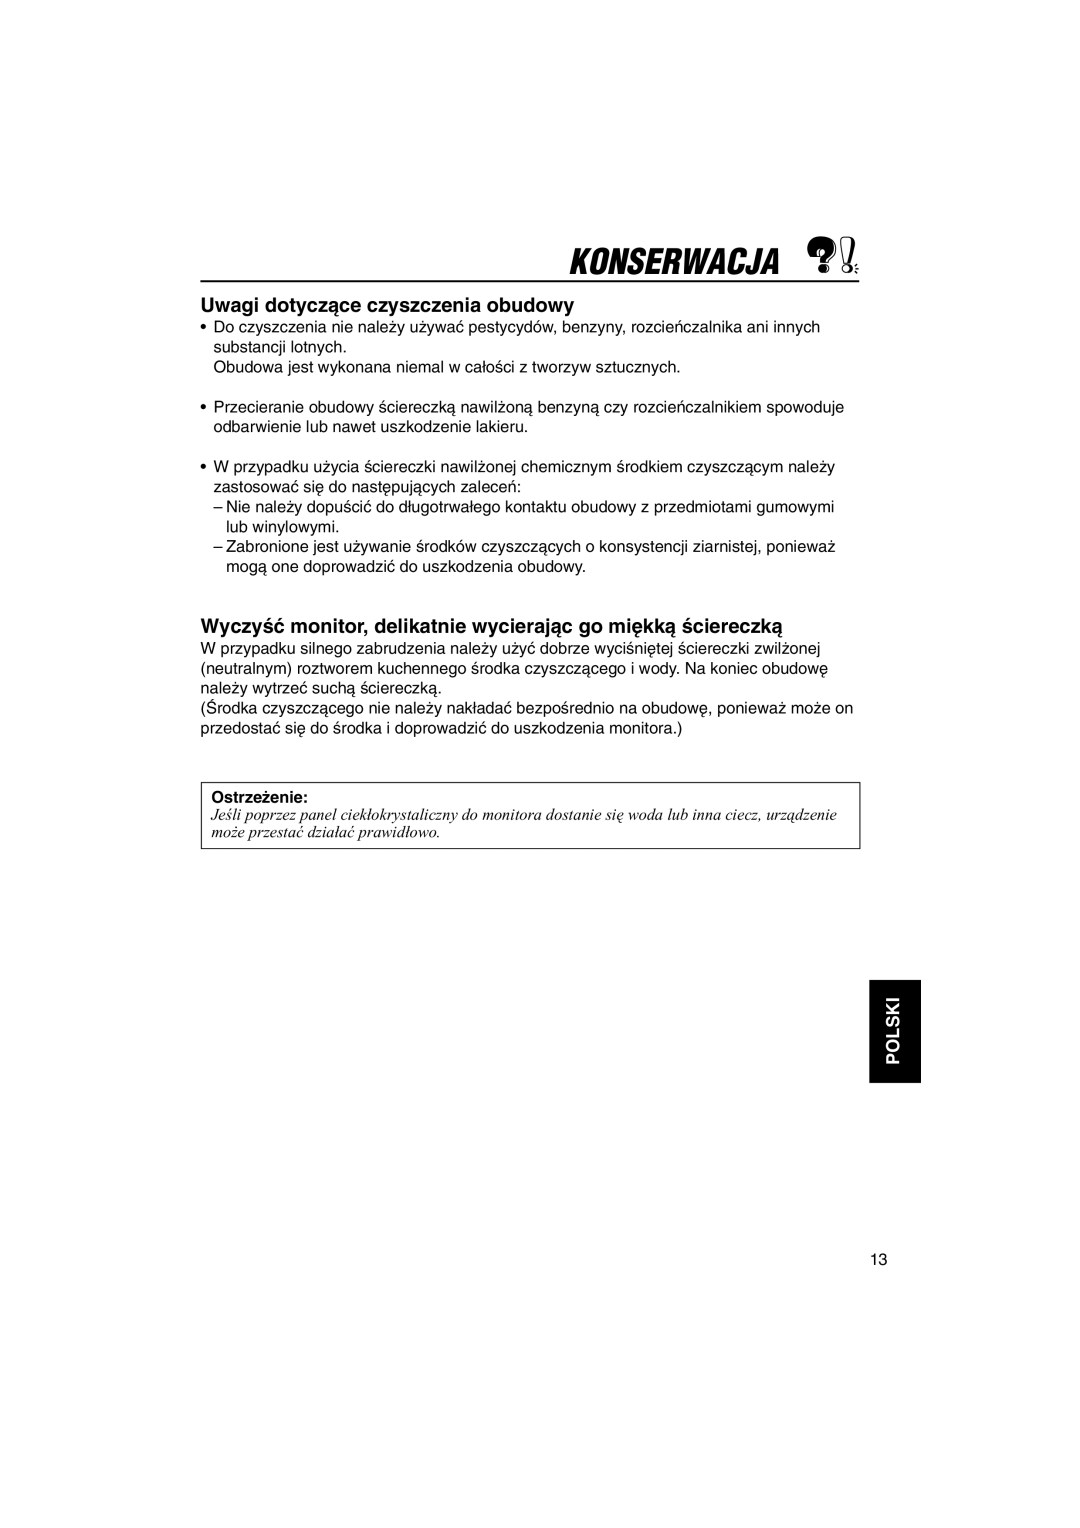 JVC KV-MH6500 manual Konserwacja, Uwagi dotyczàce czyszczenia obudowy, Ostrze˝enie, Polski 